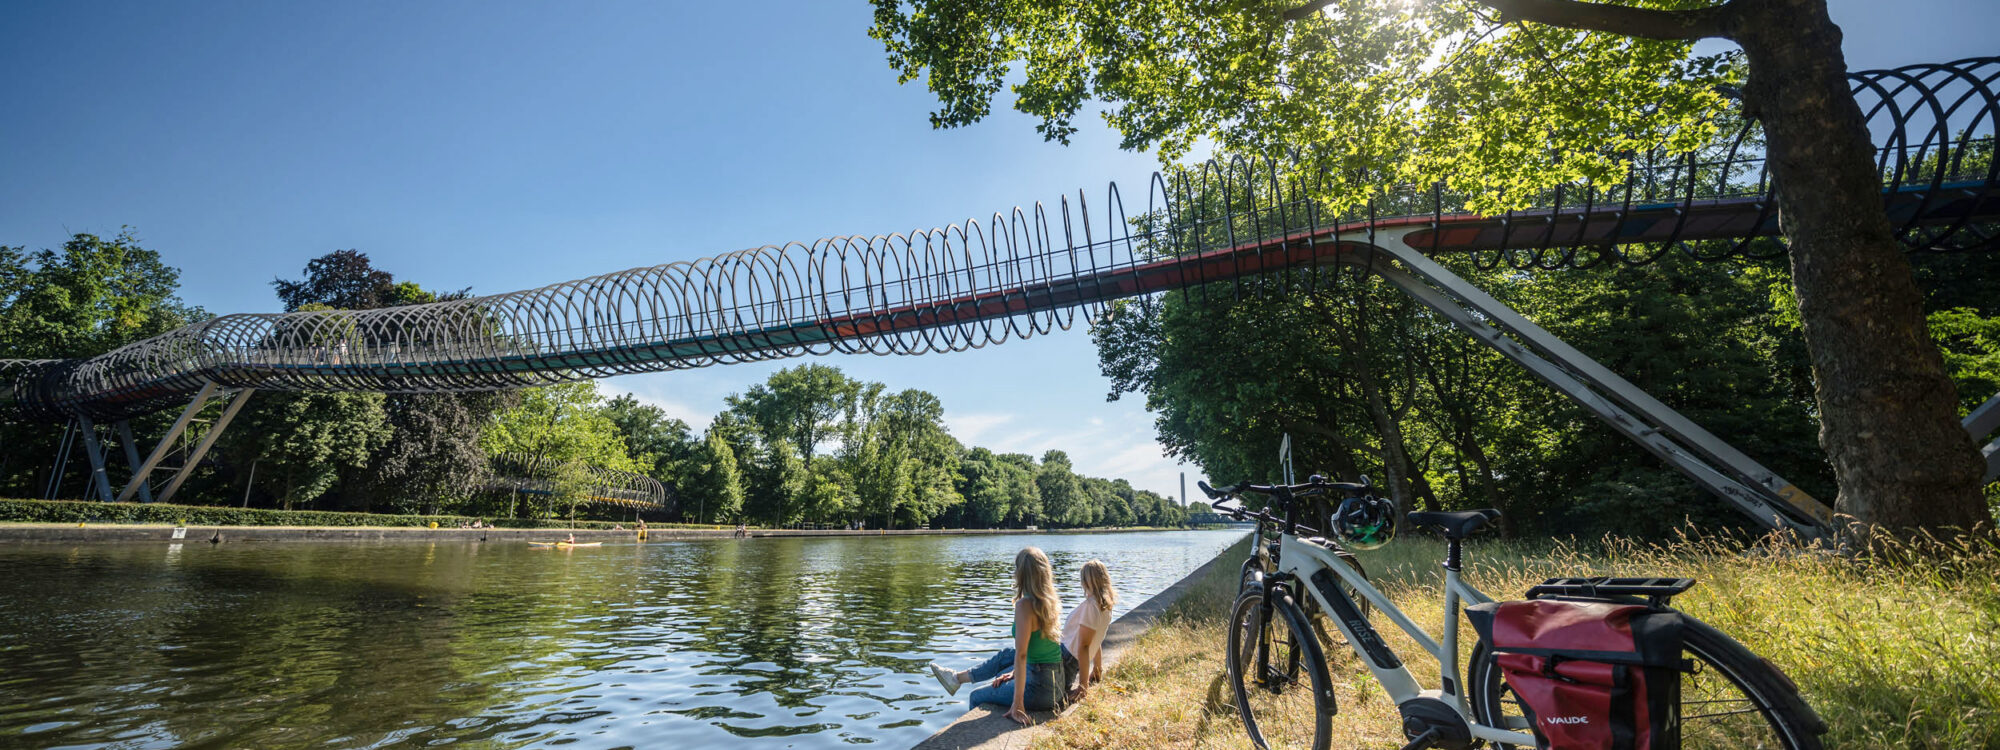 De foto toont twee fietsers aan de oevers van het Rhein-Herne-kanaal voor de Slinky Springs to Fame-brug in Oberhausen